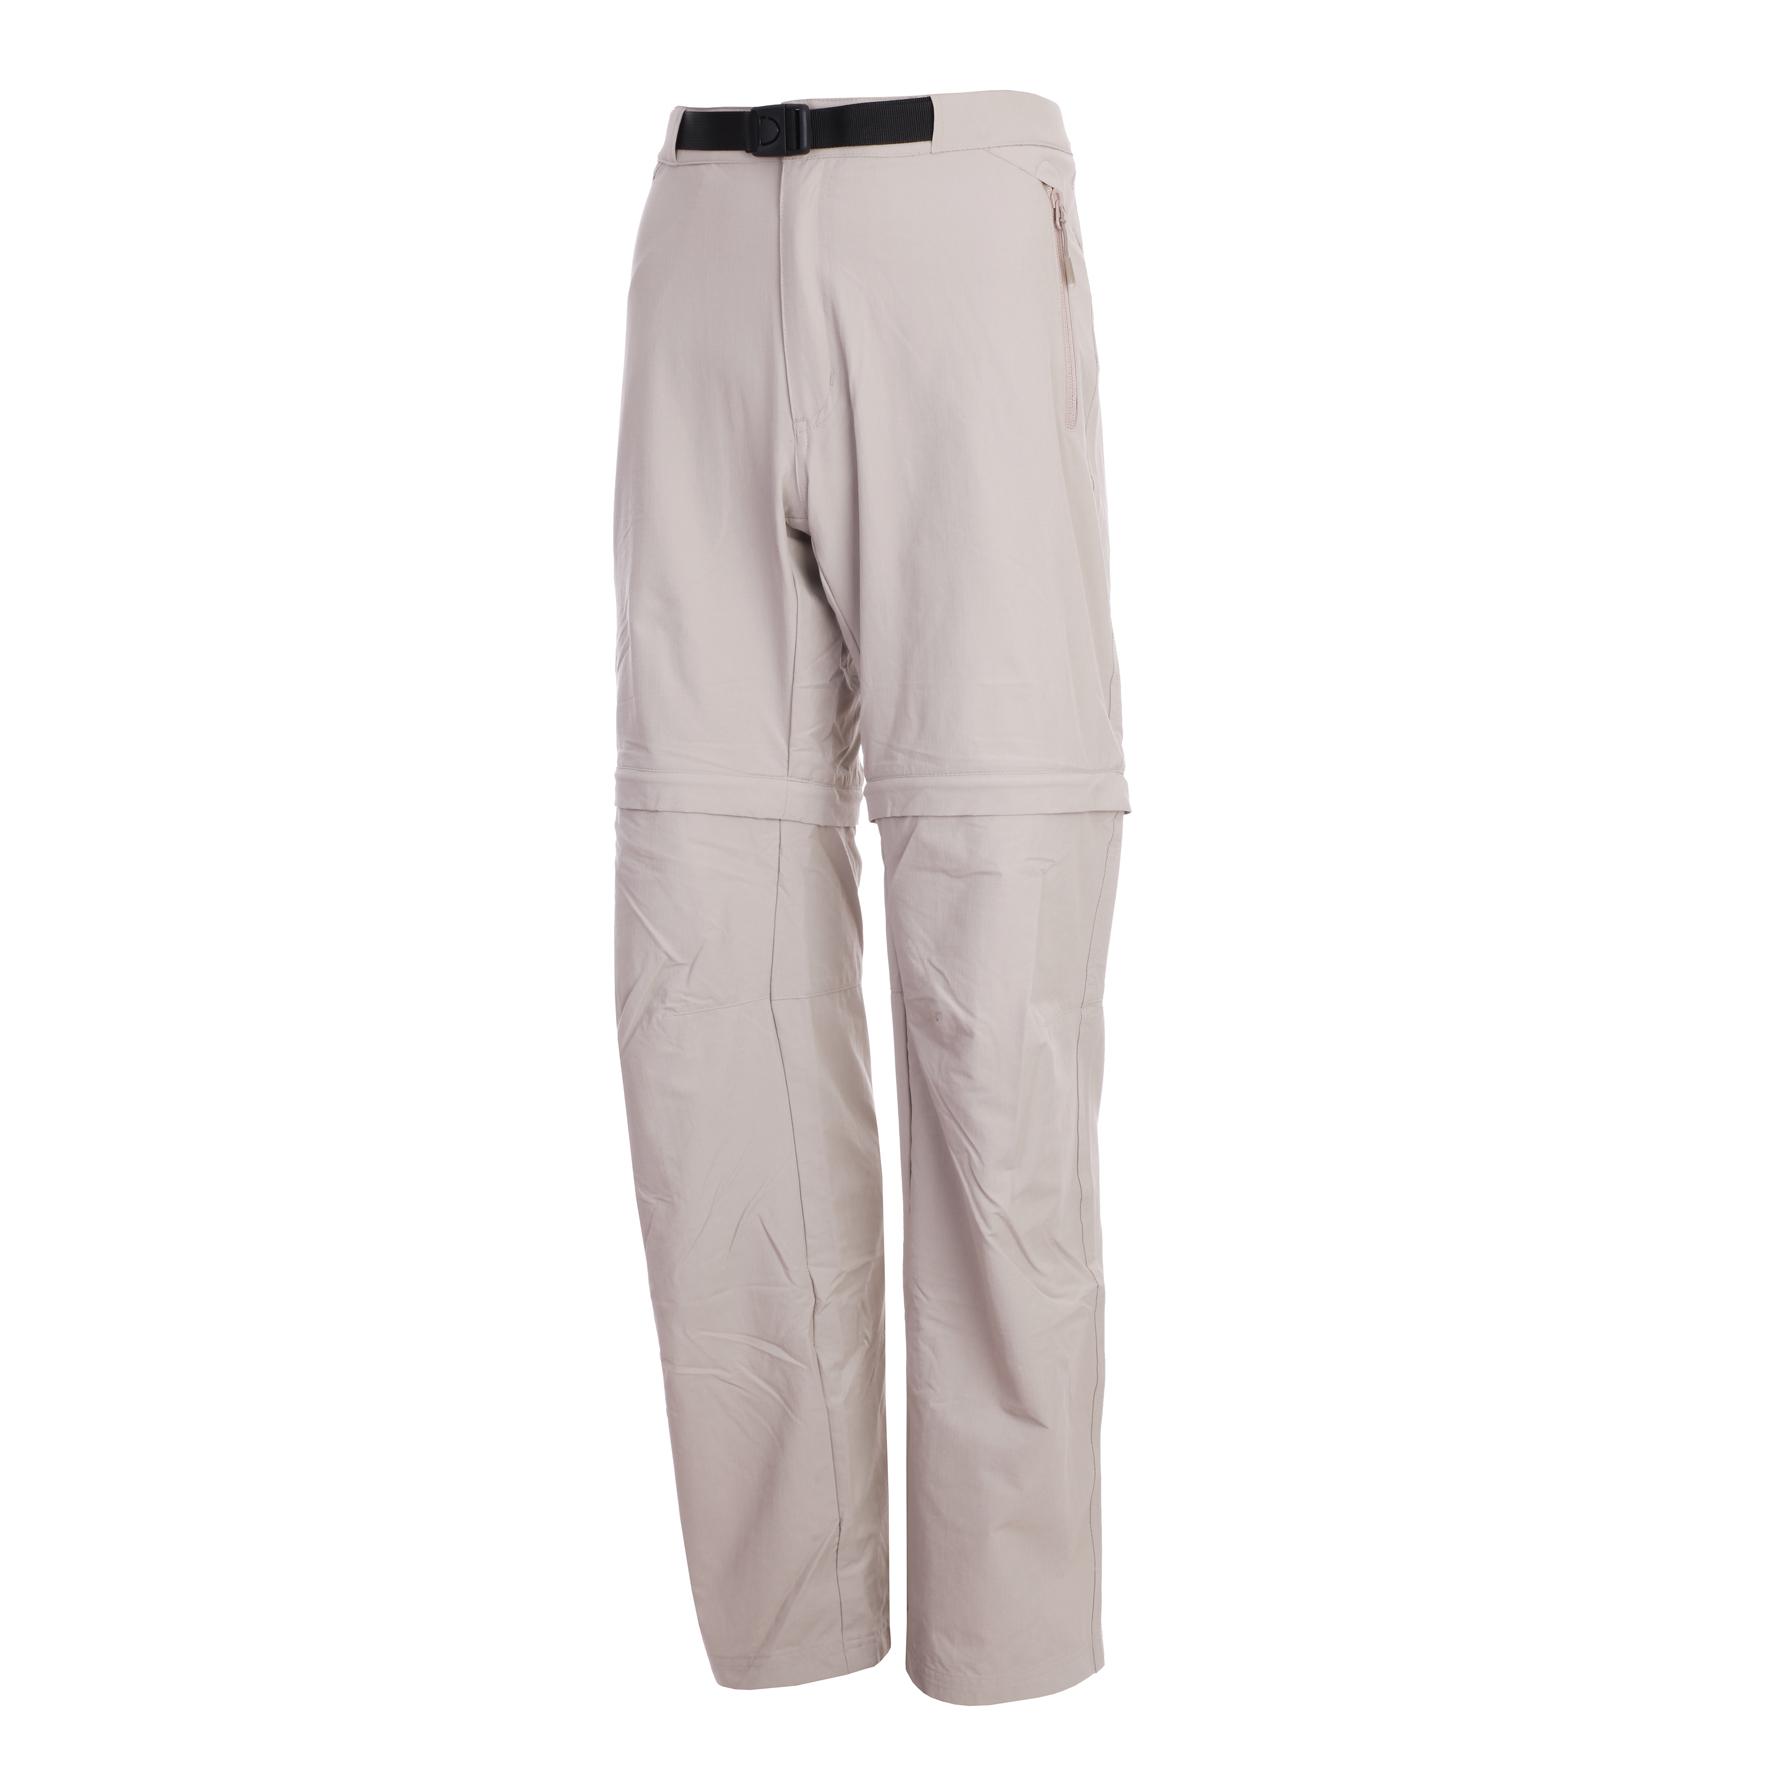 Foto Pantalones desmontables Lafuma PX beige/gris para hombre , 52 foto 964954